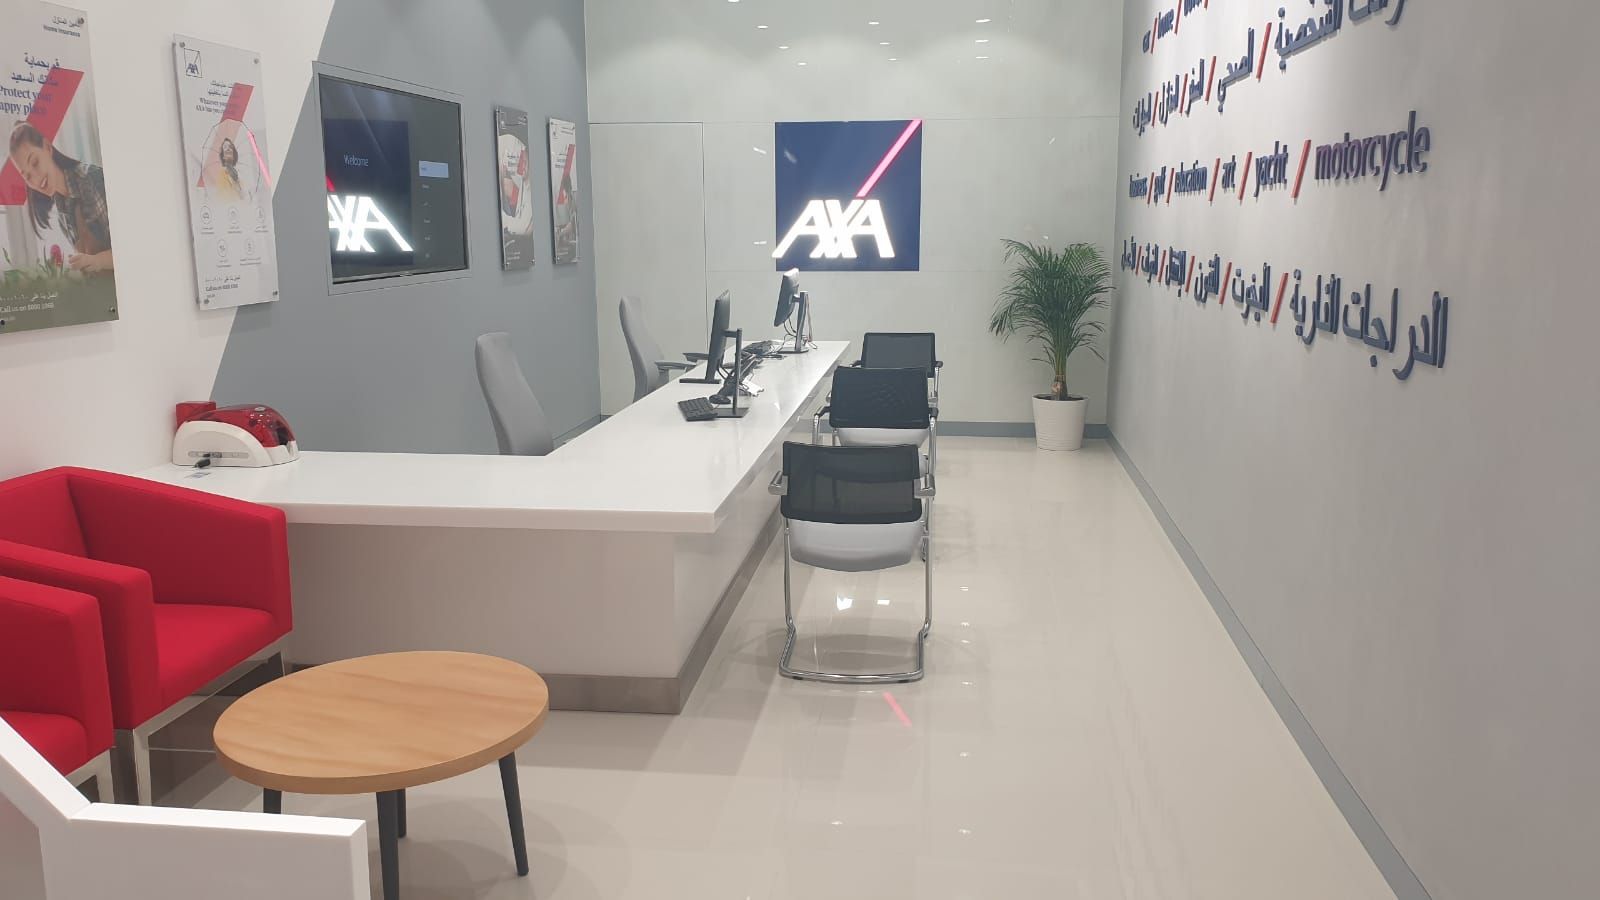 AXA Insurance – Bahrain City Center